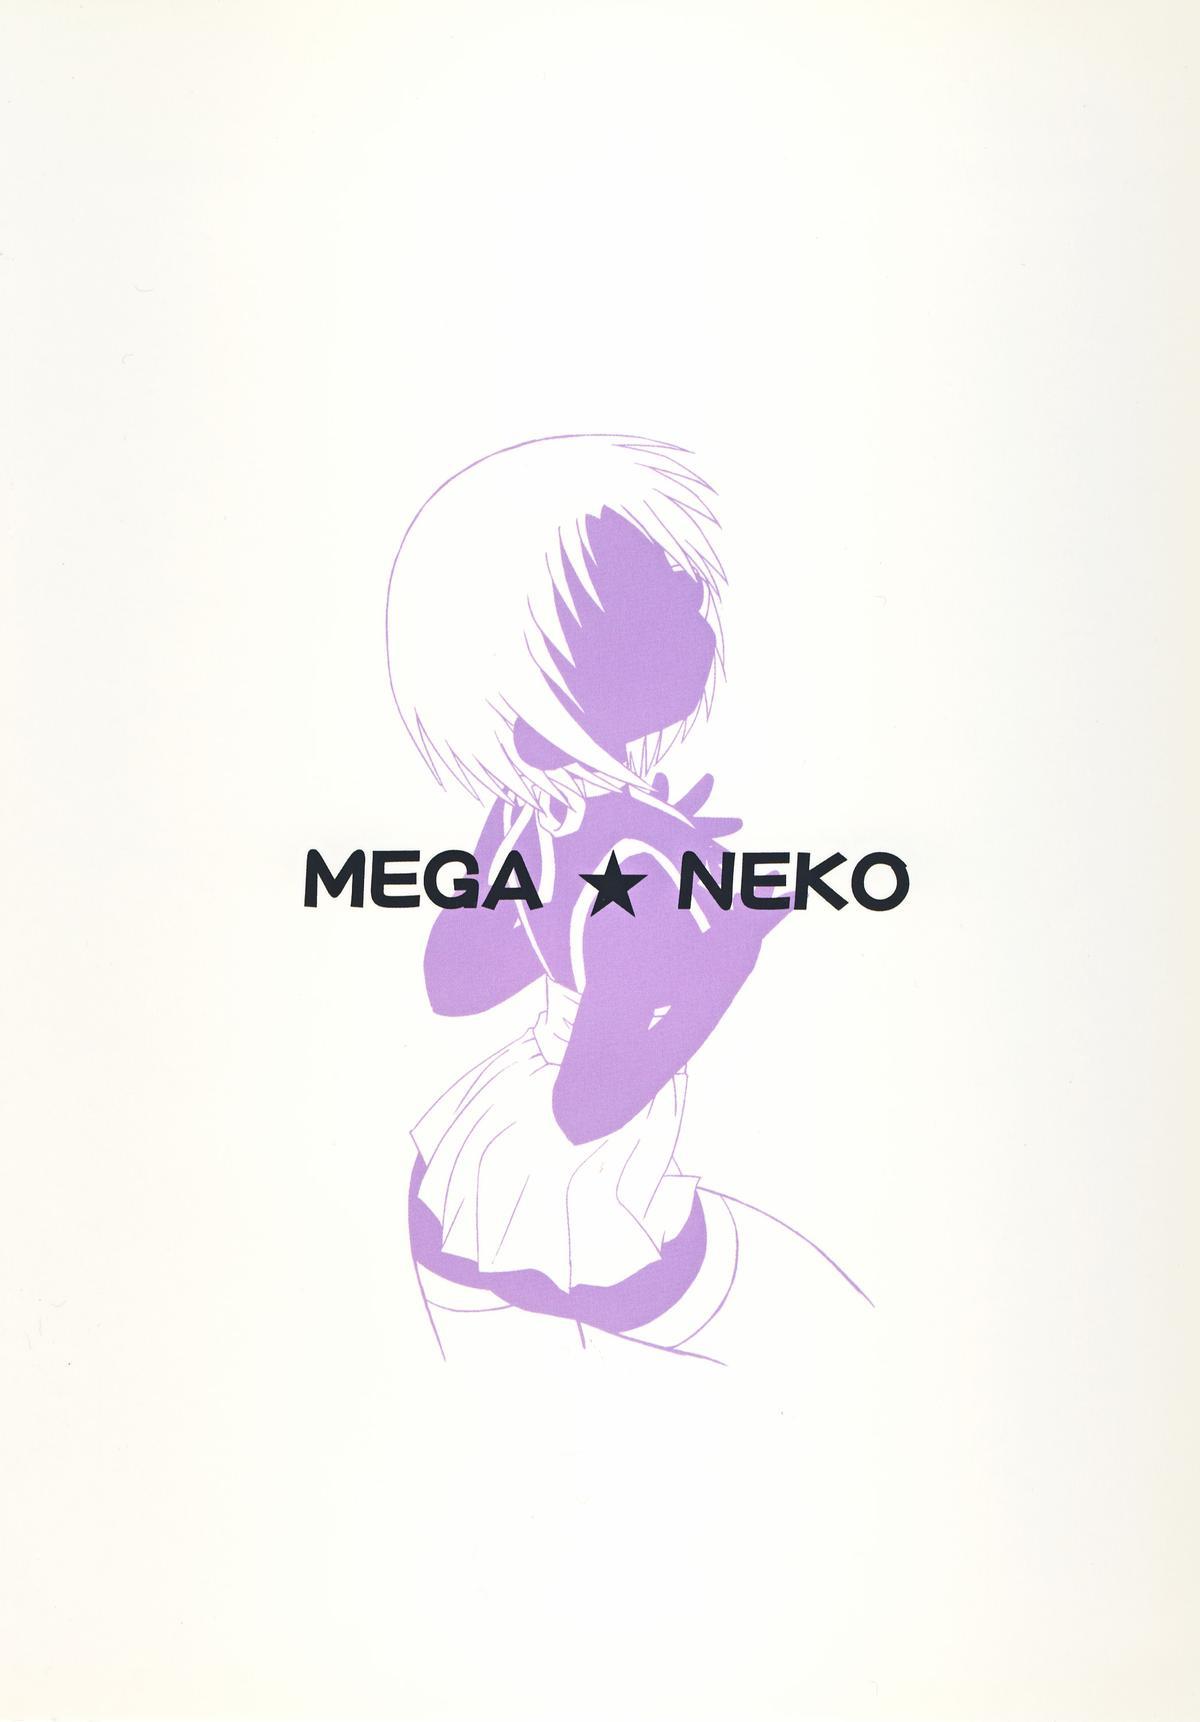 Shitteru Kuse ni! Vol.39 "Mega Neko" 25